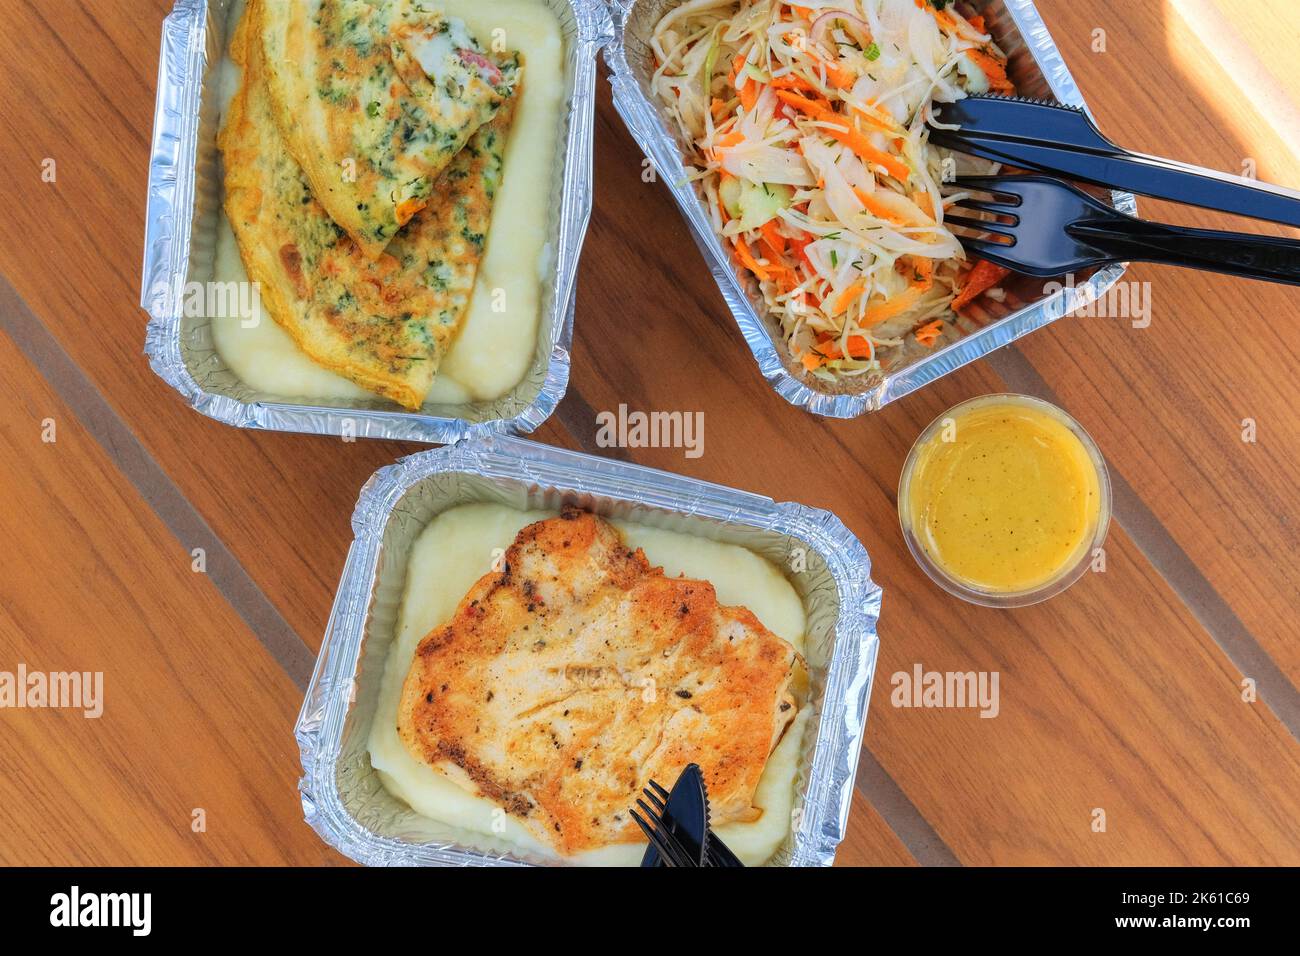 Plats à emporter. Boîte à lunch en aluminium avec filet de poulet, pommes de terre et salade. Livraison de nourriture. Vue de dessus. Banque D'Images